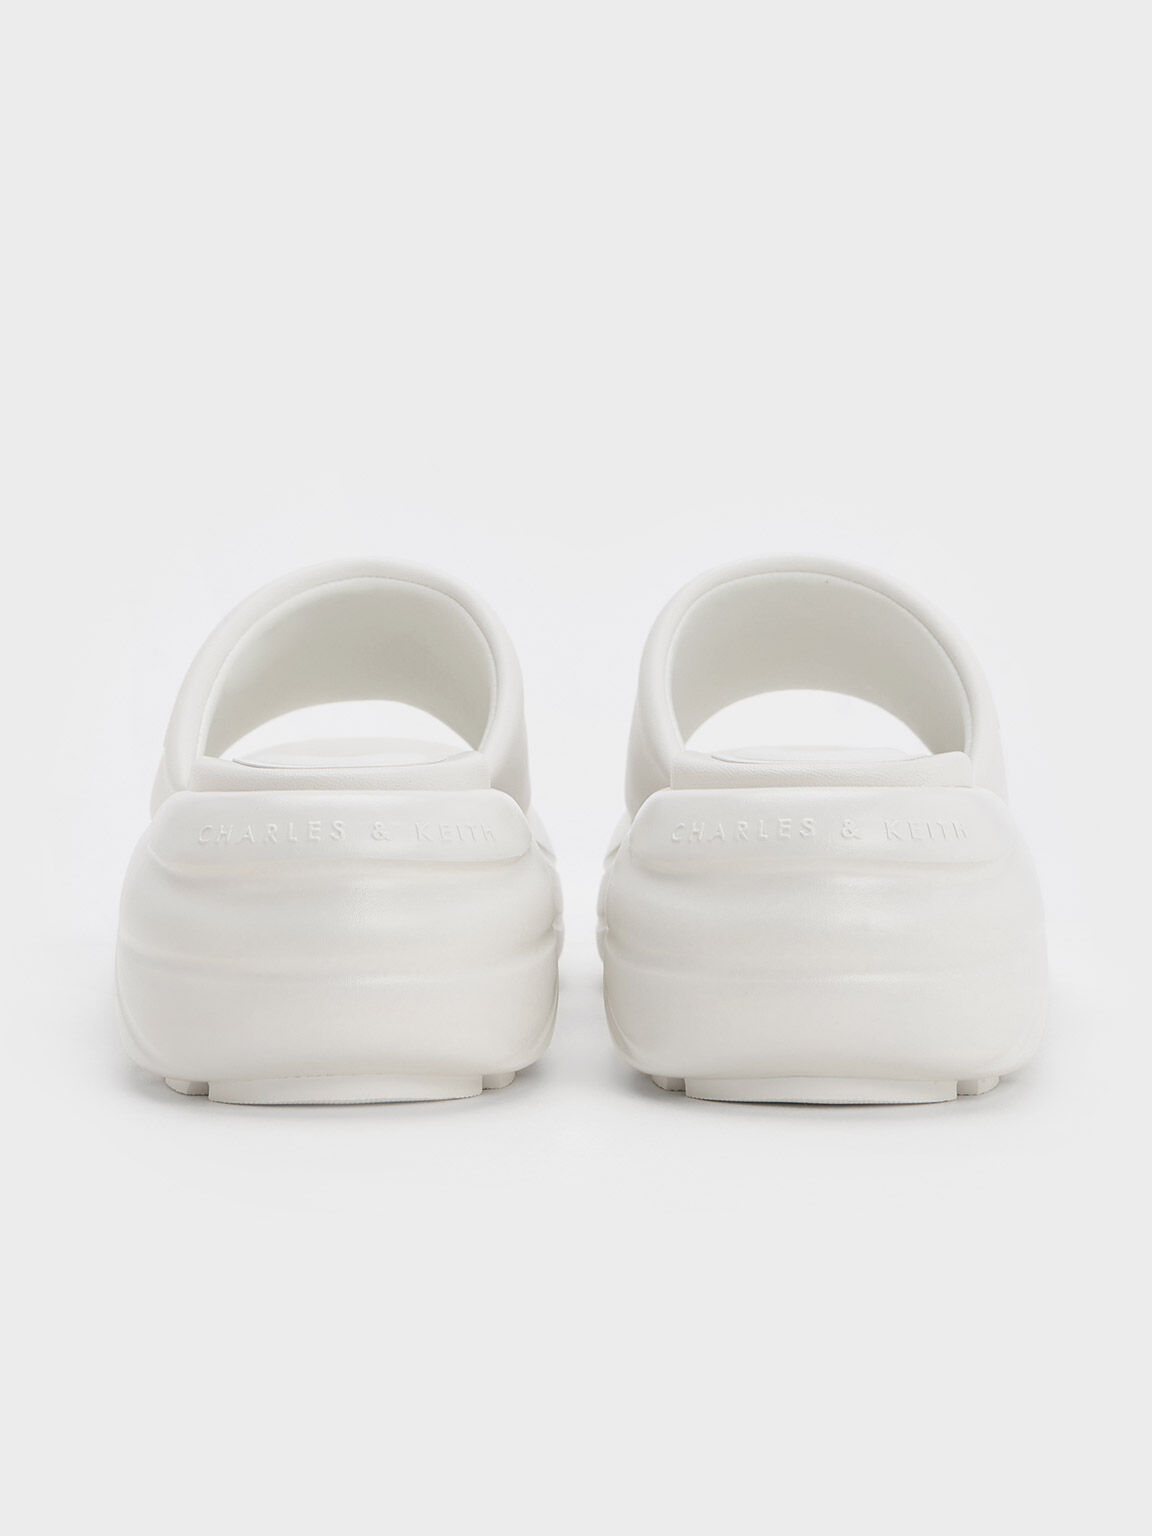 Sandal Sports Curved Platform Wide-Strap, White, hi-res